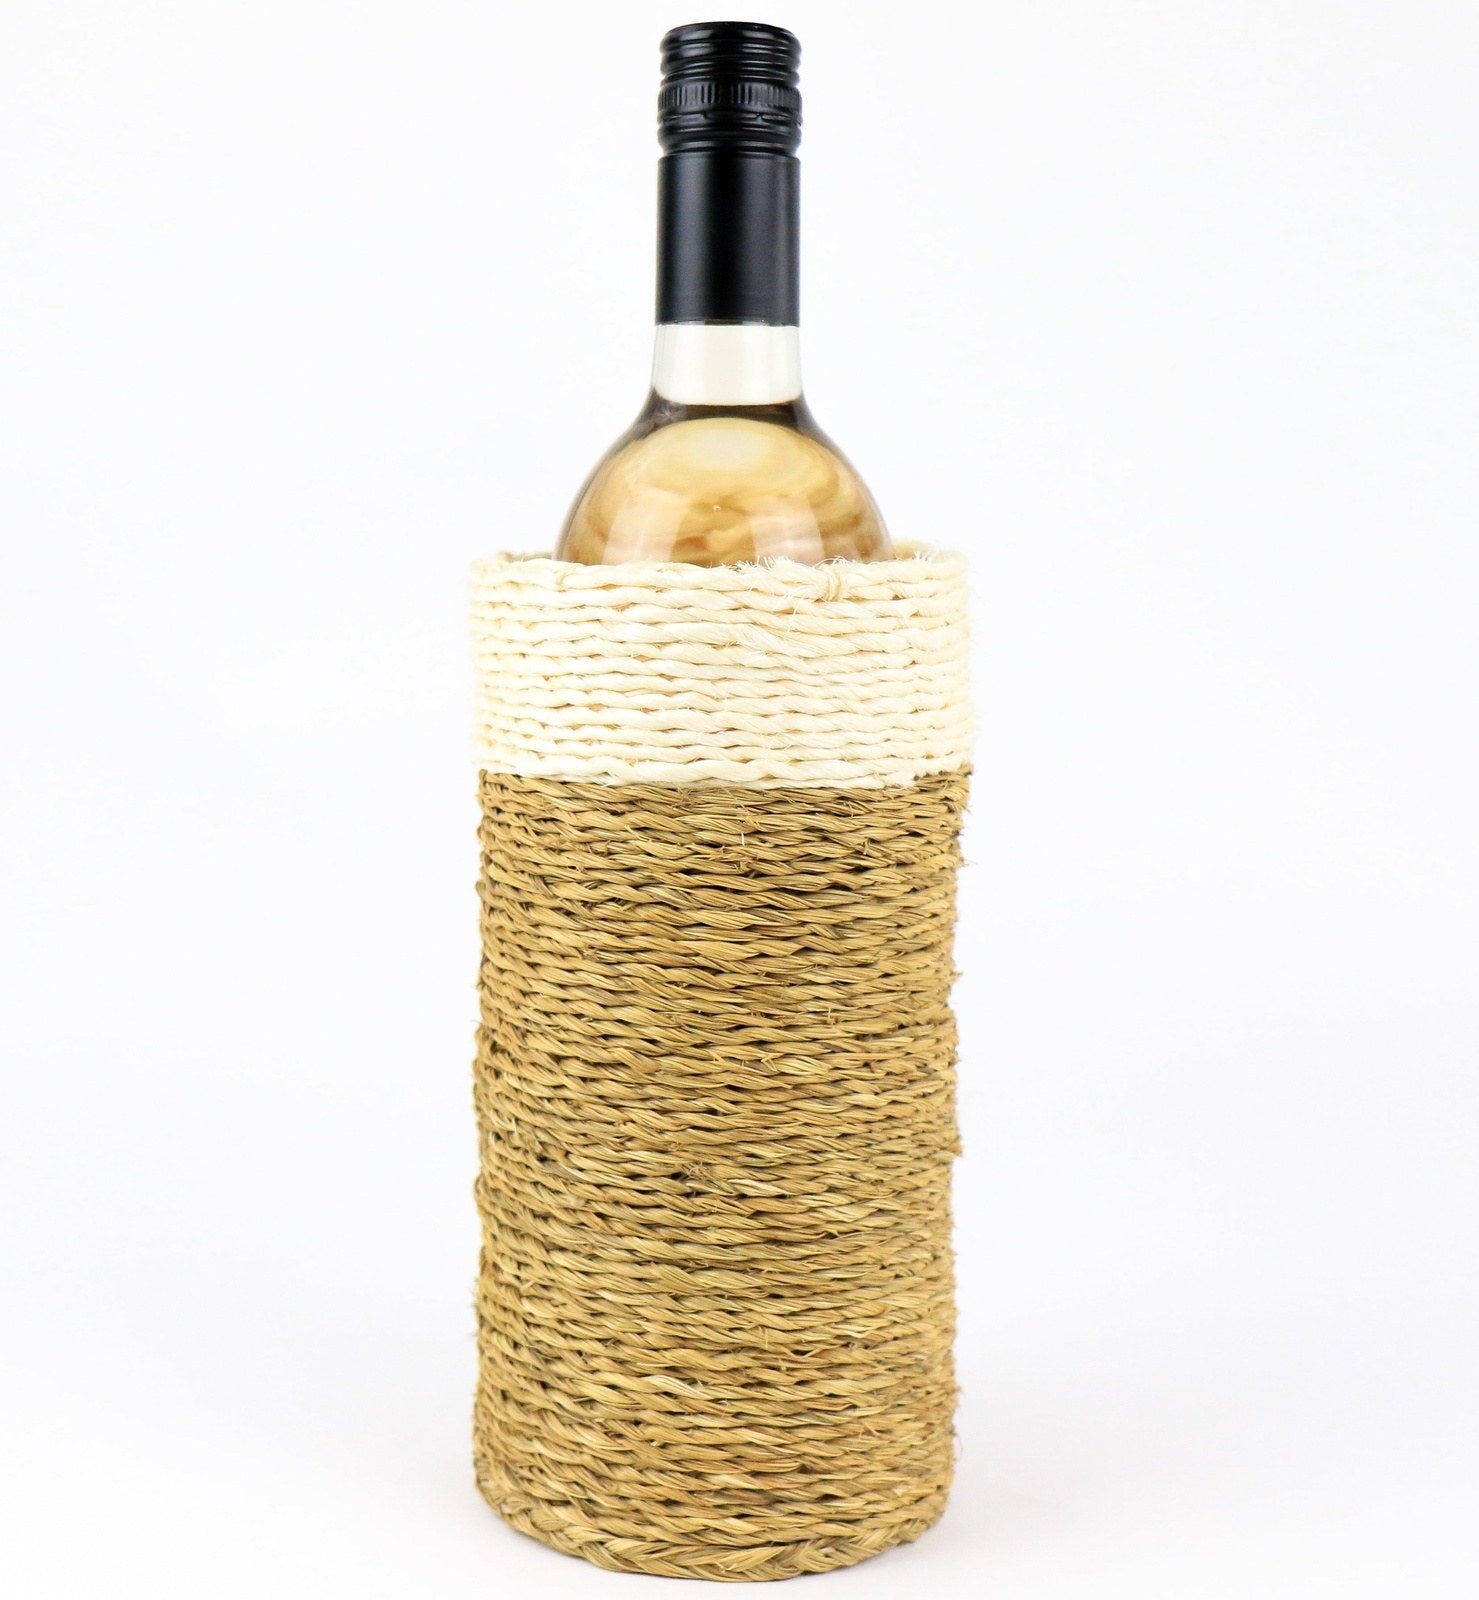 Grass Bottle Holders - Khutsala™ Artisans